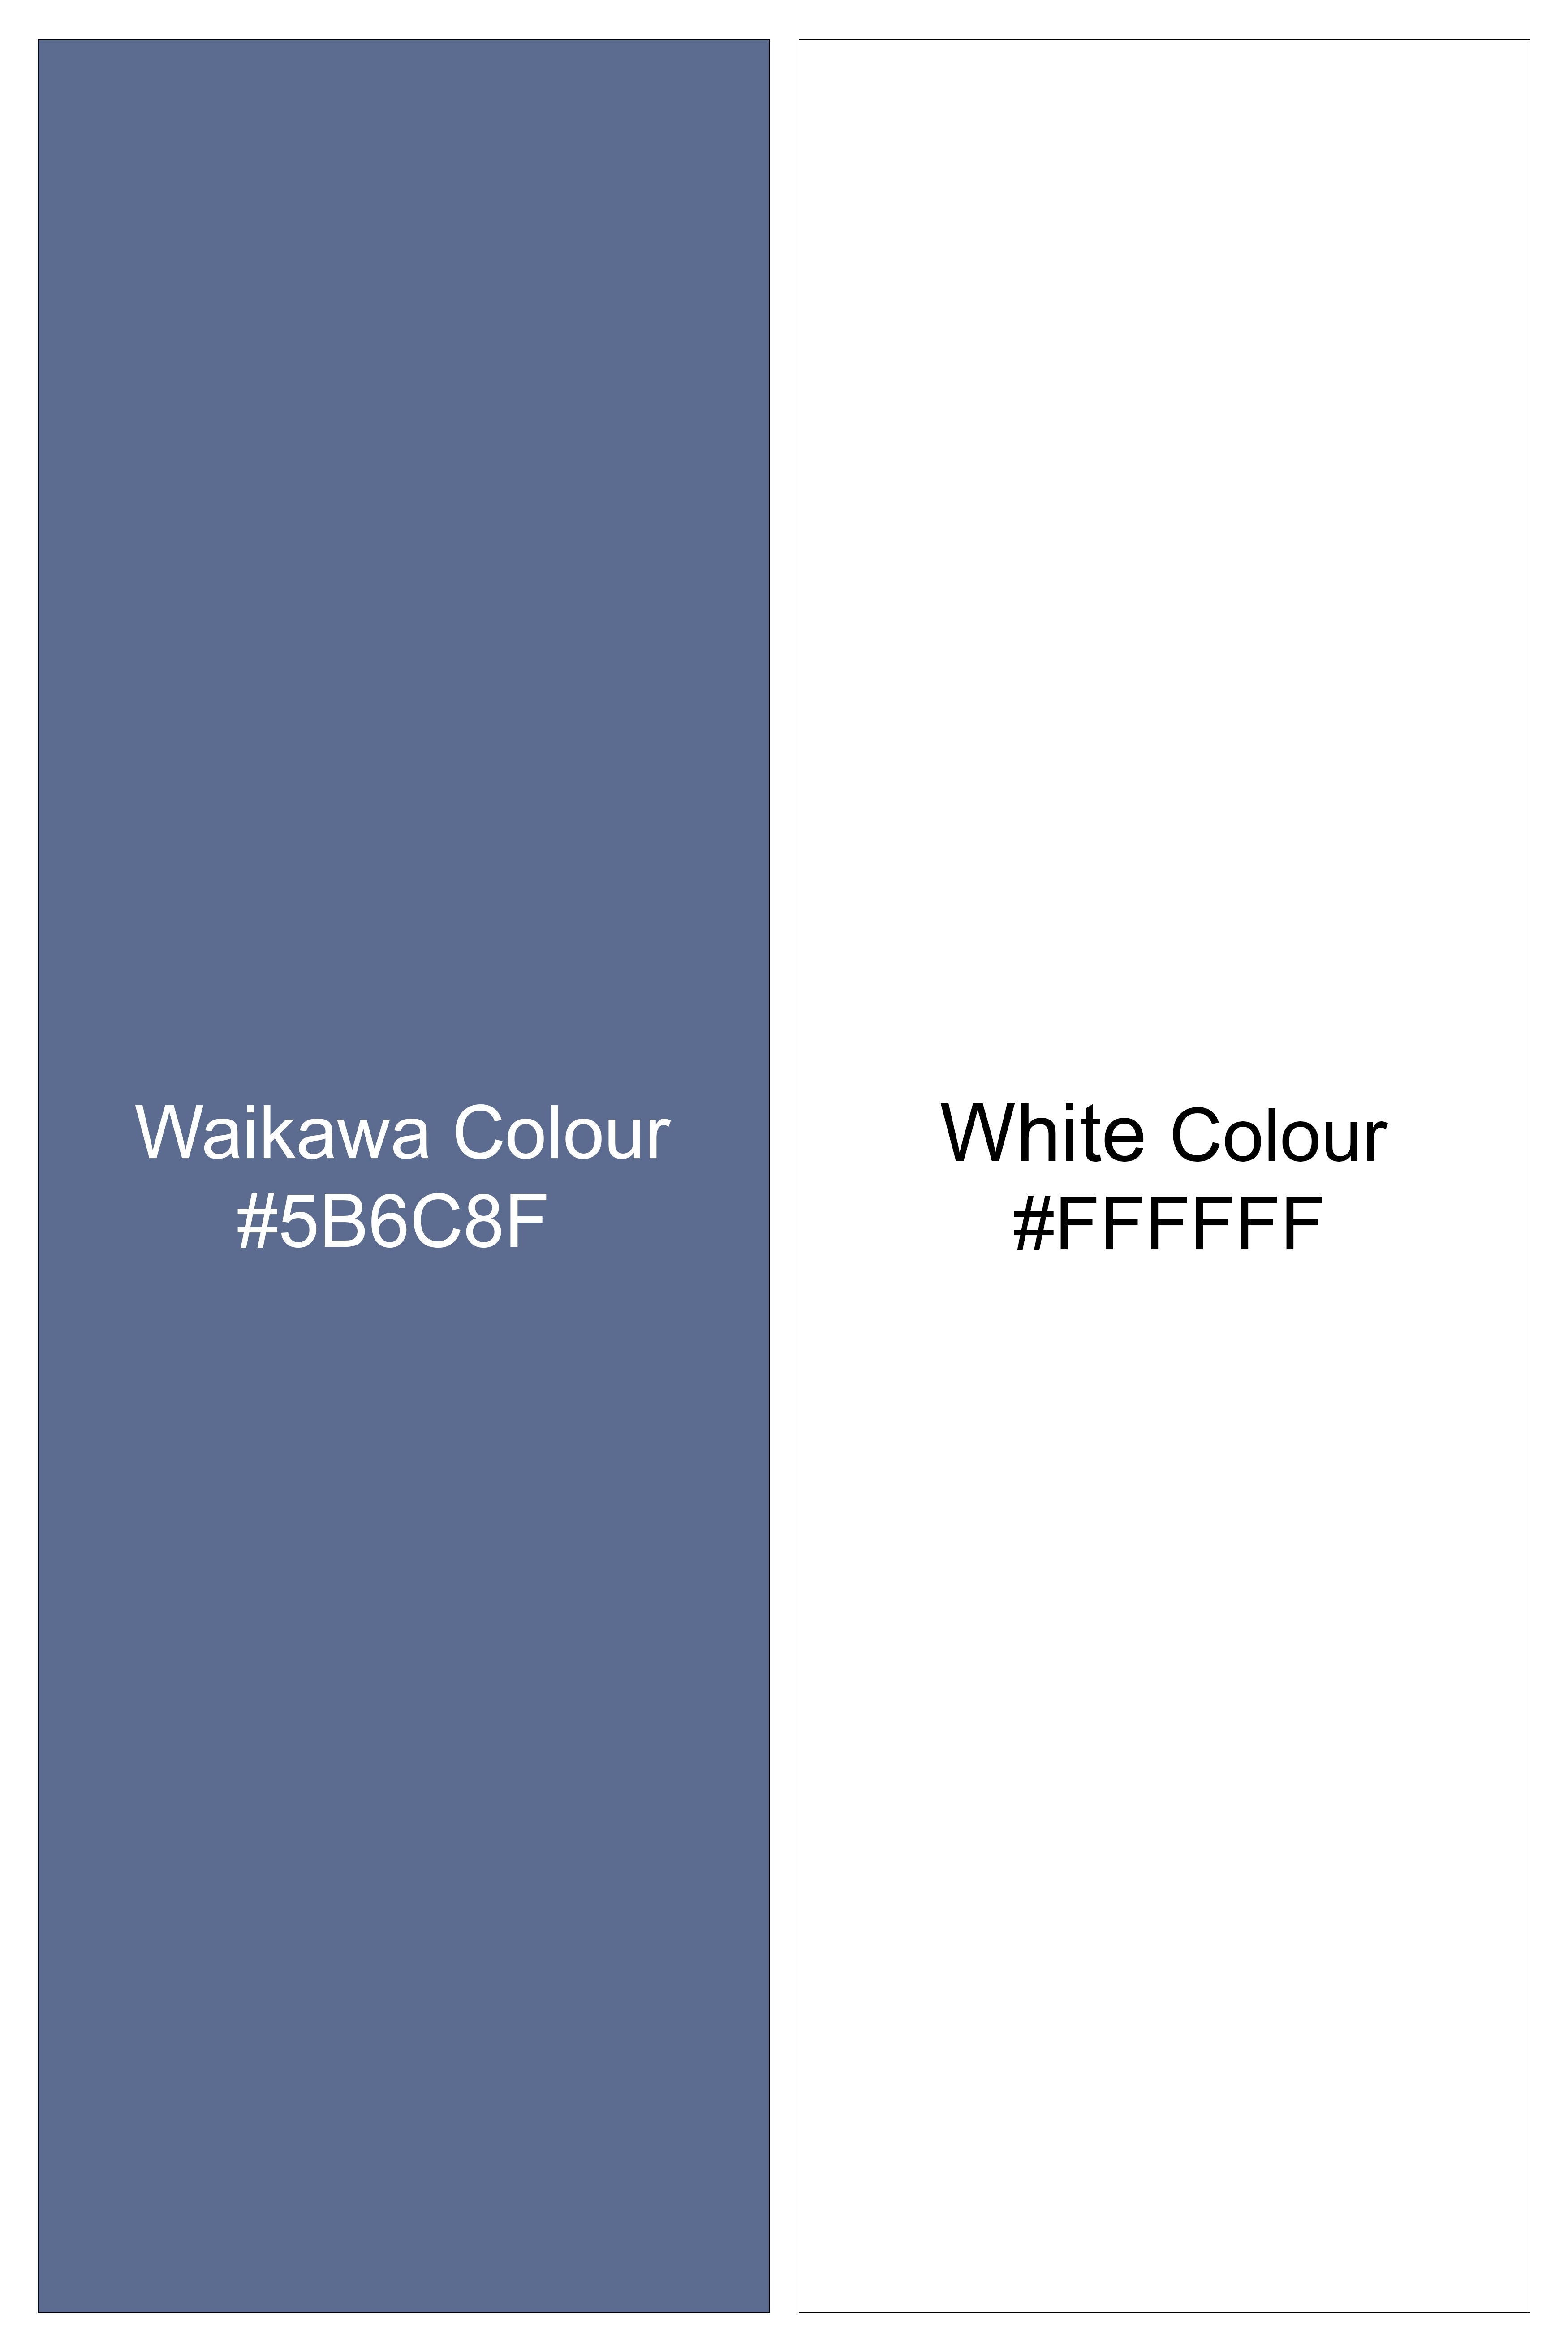 Waikawa Blue with White Hand Painted Dobby Textured Premium Giza Cotton Designer Shirt 6116-CA-ART-38, 6116-CA-ART-H-38, 6116-CA-ART-39, 6116-CA-ART-H-39, 6116-CA-ART-40, 6116-CA-ART-H-40, 6116-CA-ART-42, 6116-CA-ART-H-42, 6116-CA-ART-44, 6116-CA-ART-H-44, 6116-CA-ART-46, 6116-CA-ART-H-46, 6116-CA-ART-48, 6116-CA-ART-H-48, 6116-CA-ART-50, 6116-CA-ART-H-50, 6116-CA-ART-52, 6116-CA-ART-H-52